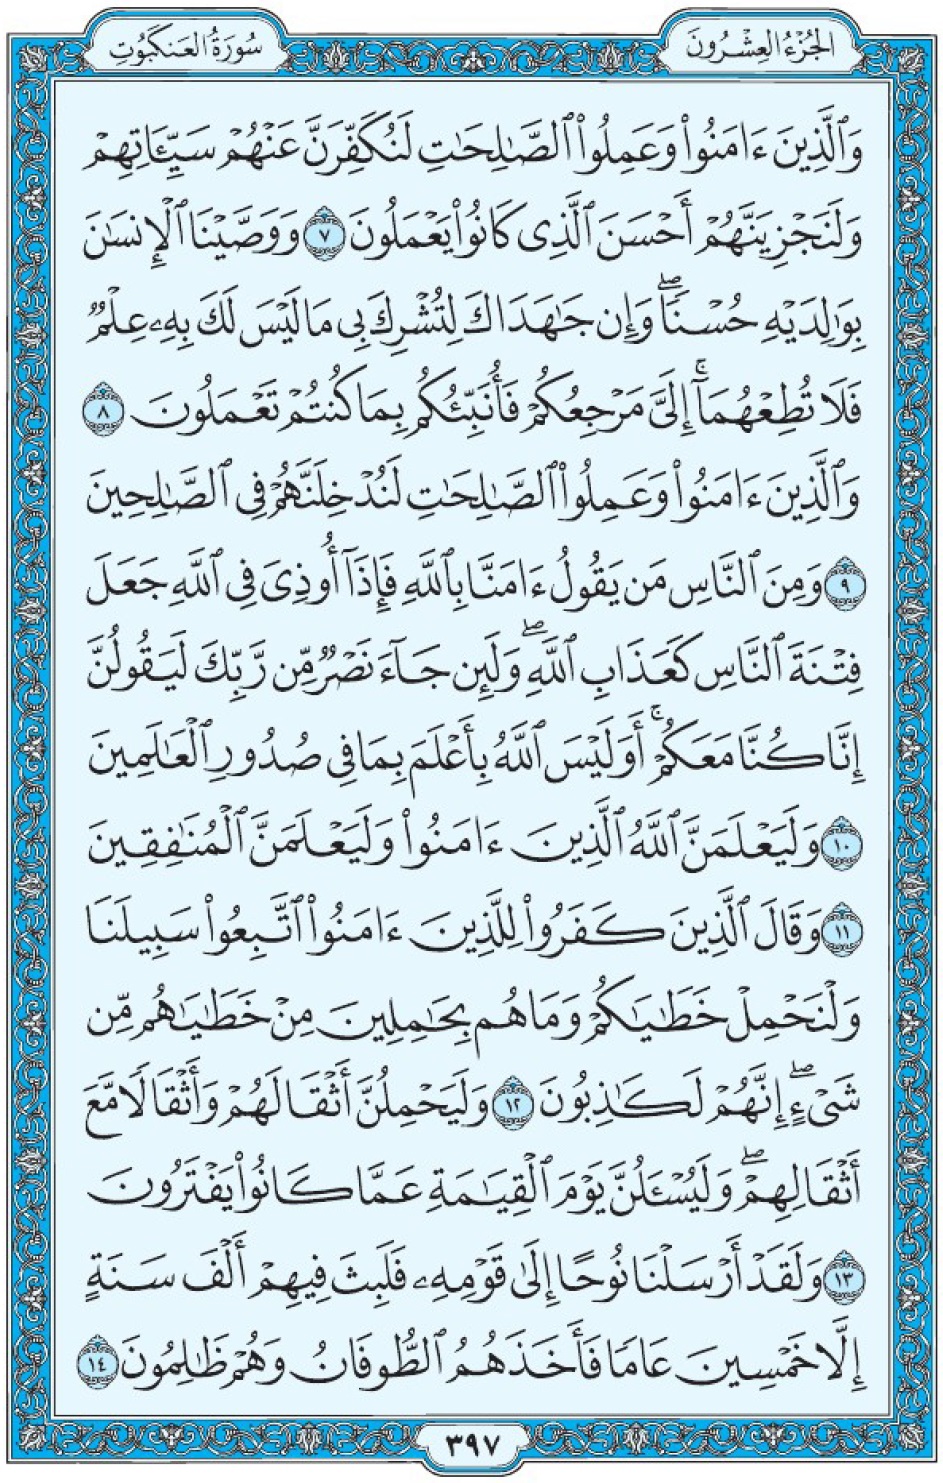 Коран Мединский мусхаф страница 397, Аль-‘Анкабут, аят 7-14